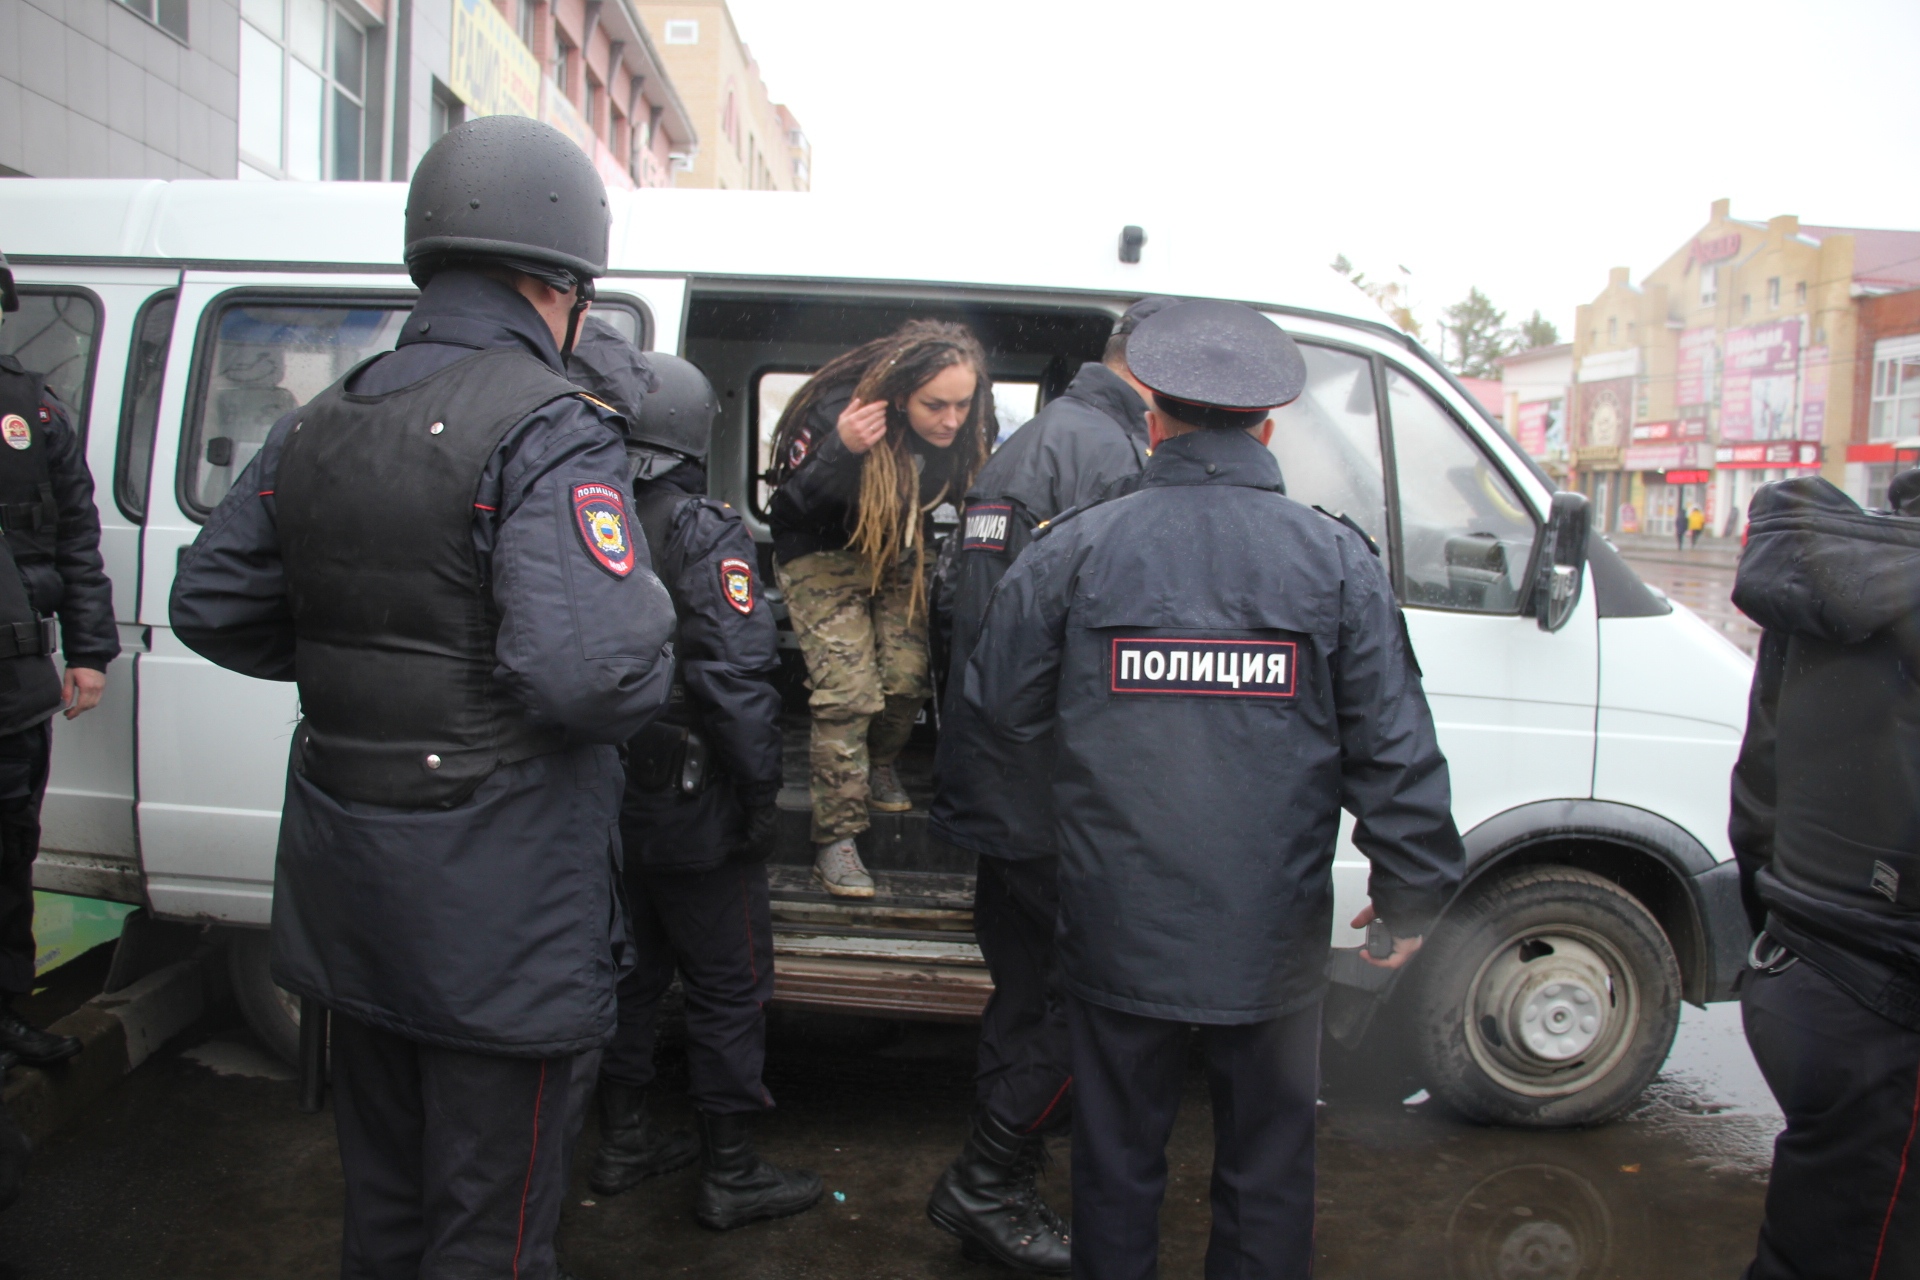 Каждой по 10 тысяч: в Архангельске осудили трёх участниц антимусорного митинга